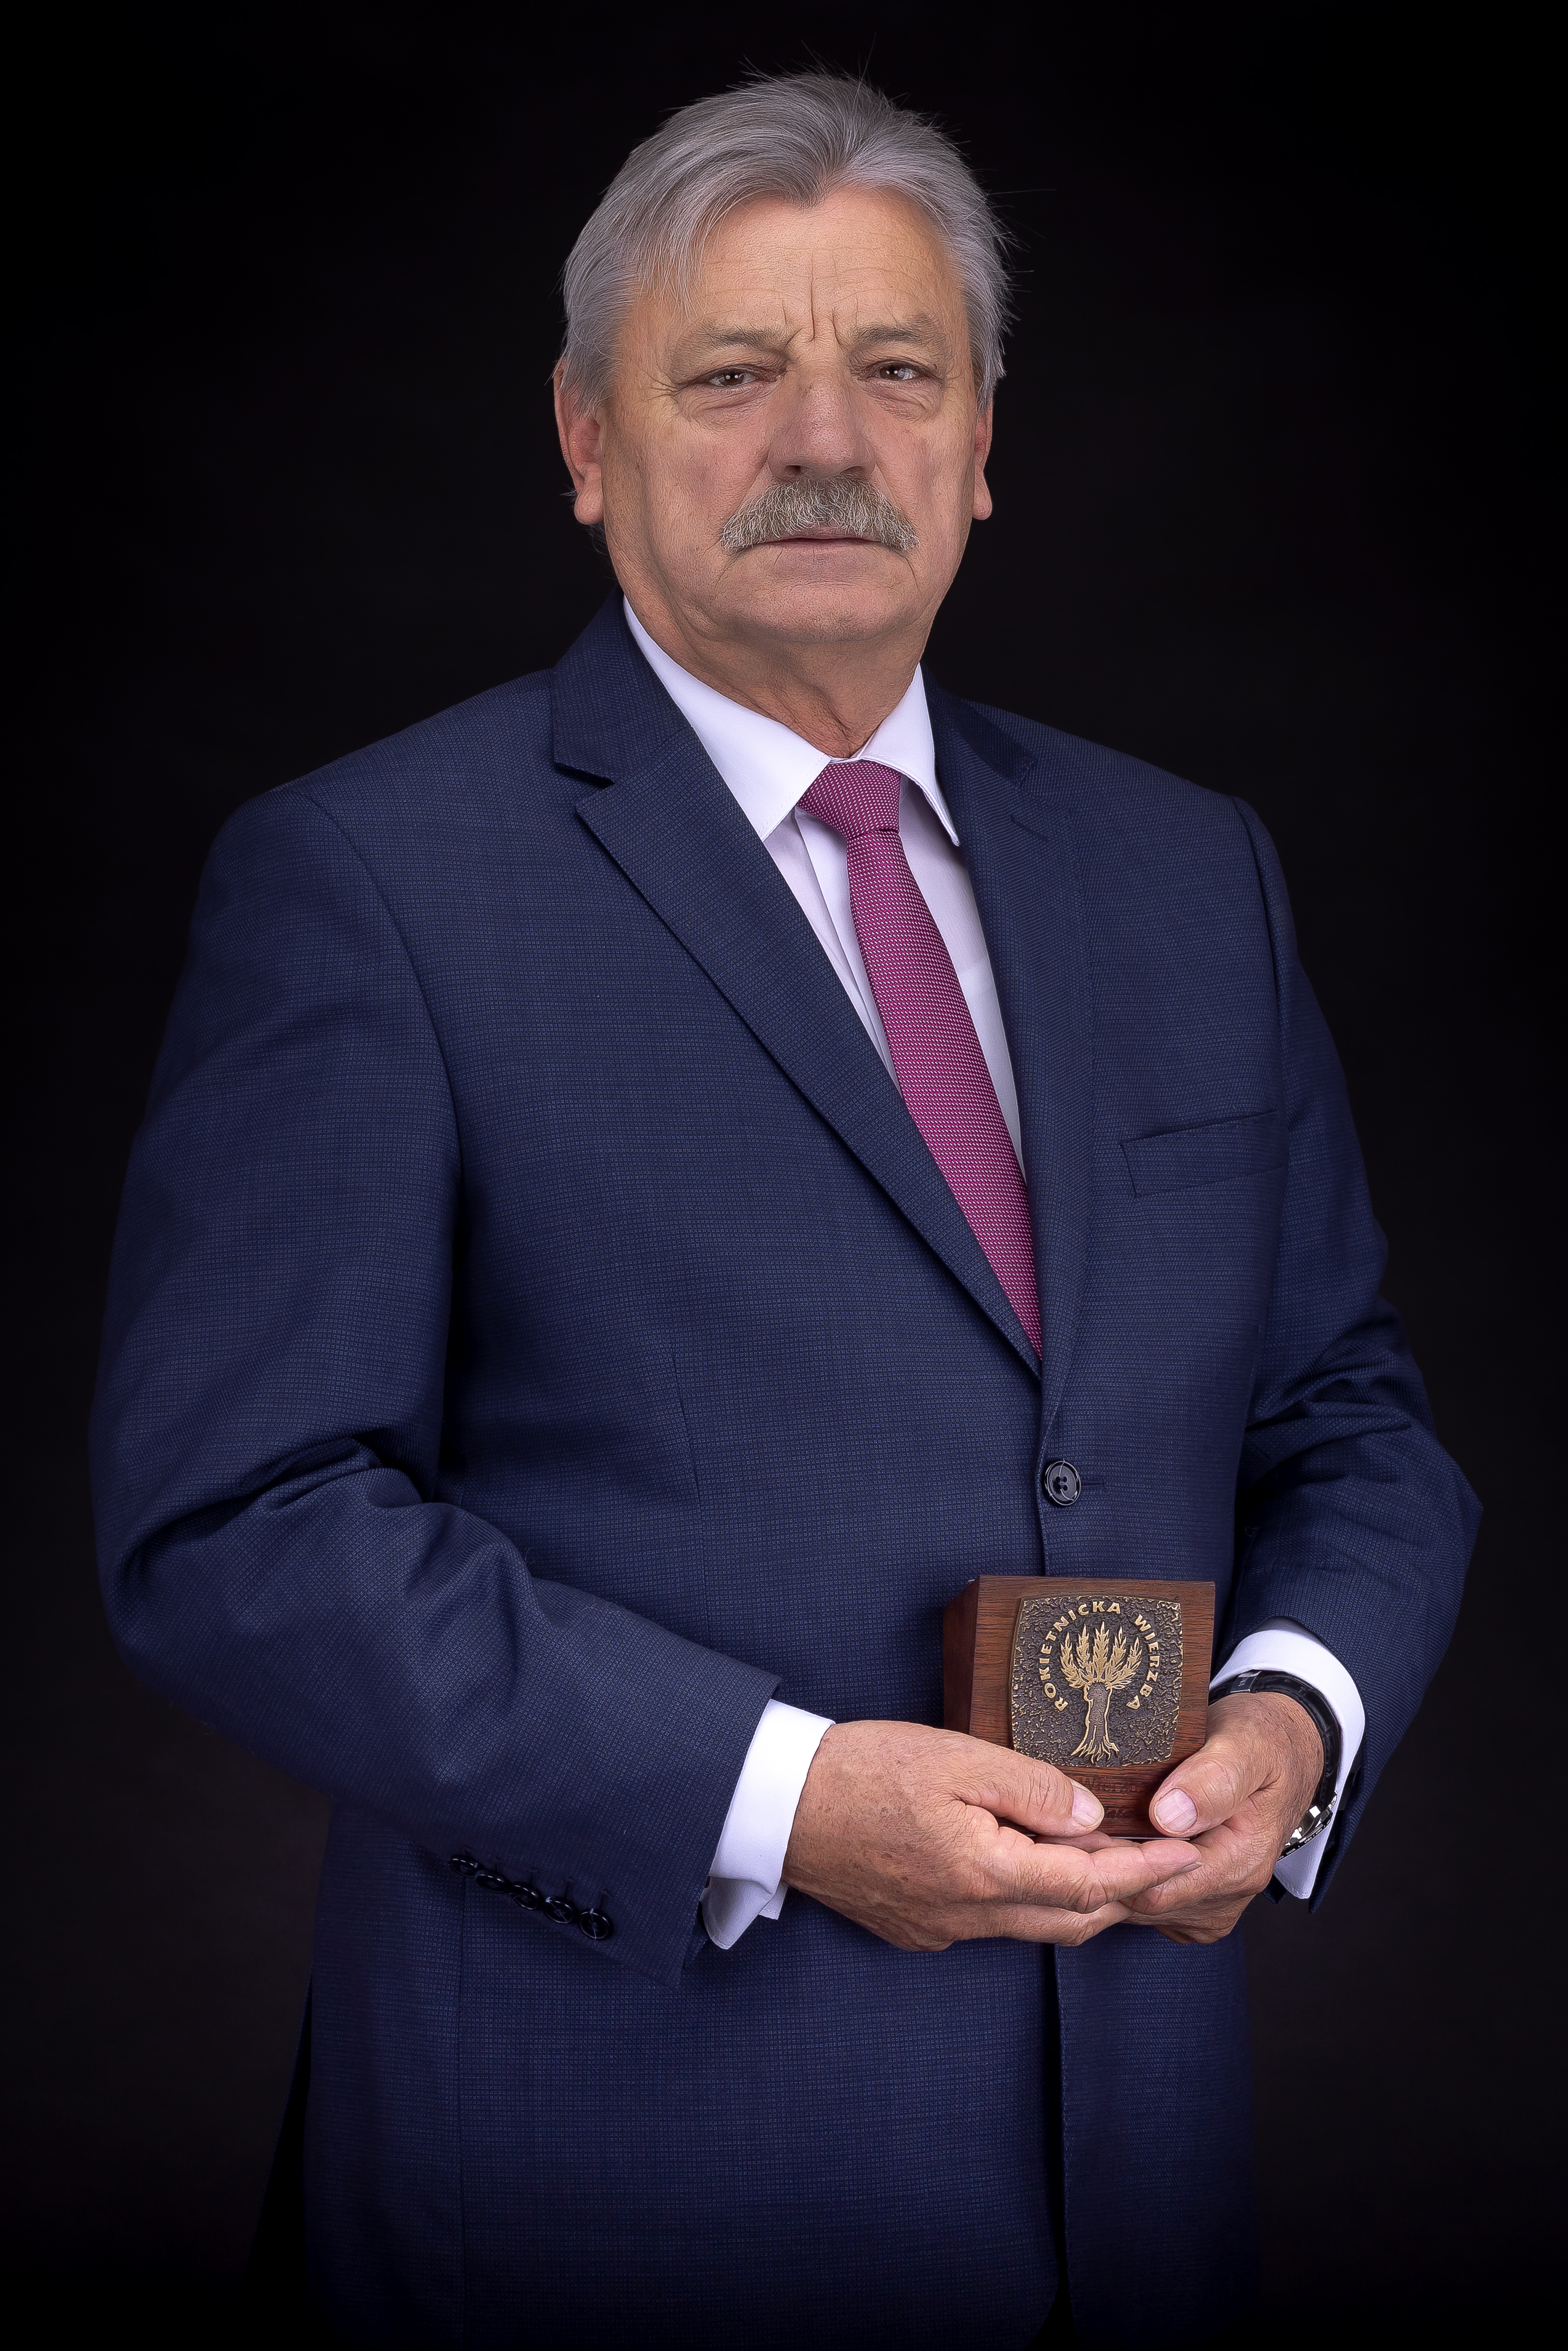 Na zdjęciu laureat statuetki Rokietnickiej Wierzby 2021, Wojciech Tulibacki, na czarnym tle w granatowym garniturze, białej koszuli i różowym krawacie. W rękach trzyma statuetkę Rokietnickiej Wierzby.